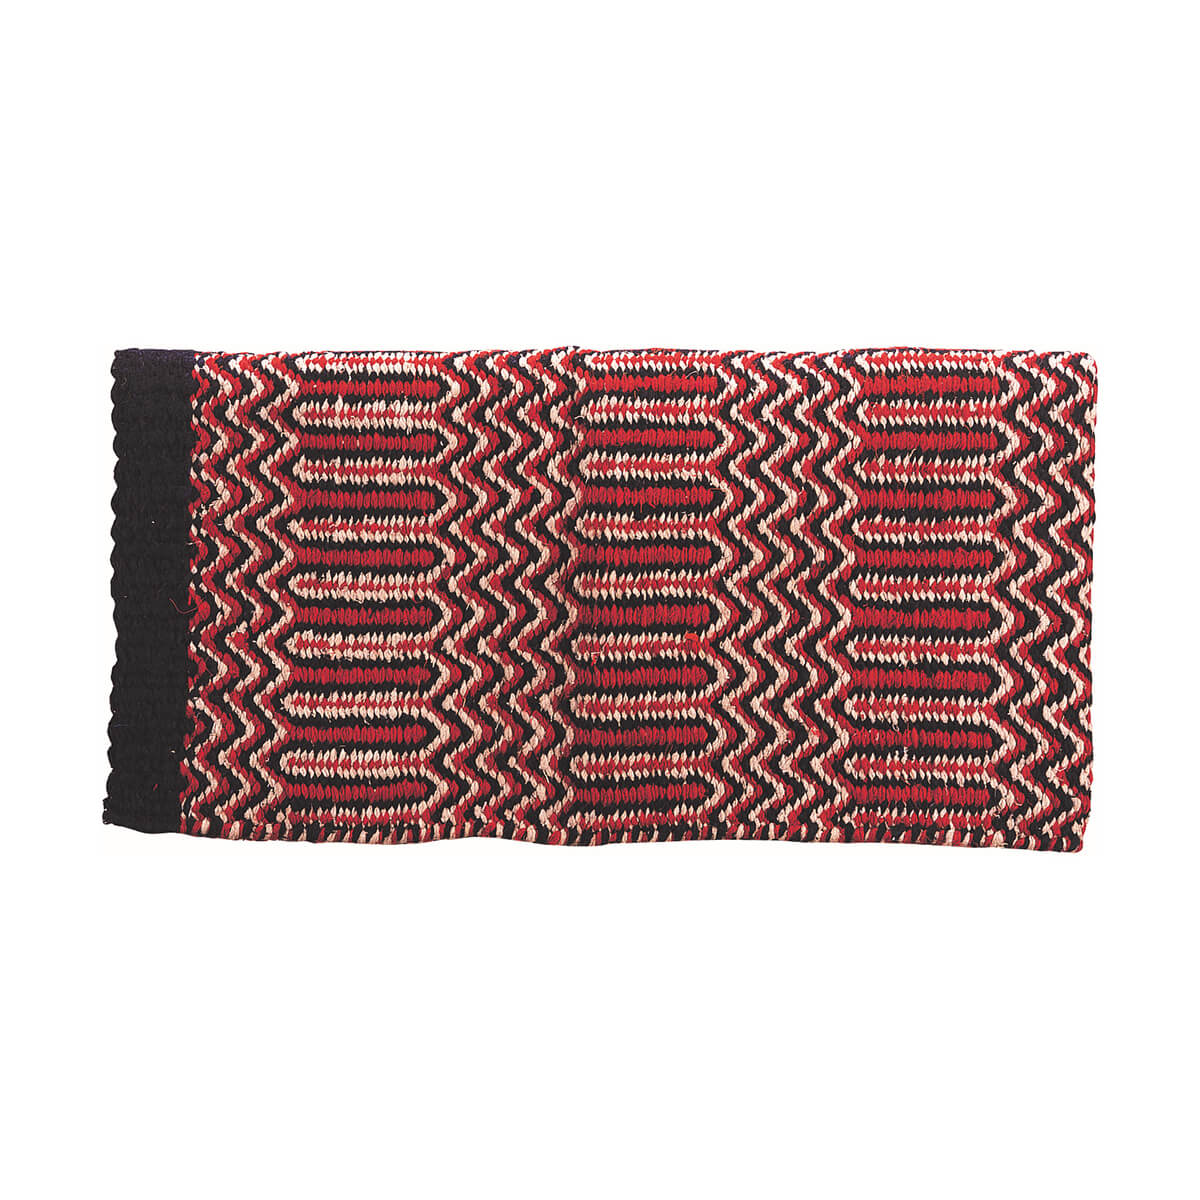 Double Weave Navajo Saddle Blanket - 32-in x 64-in